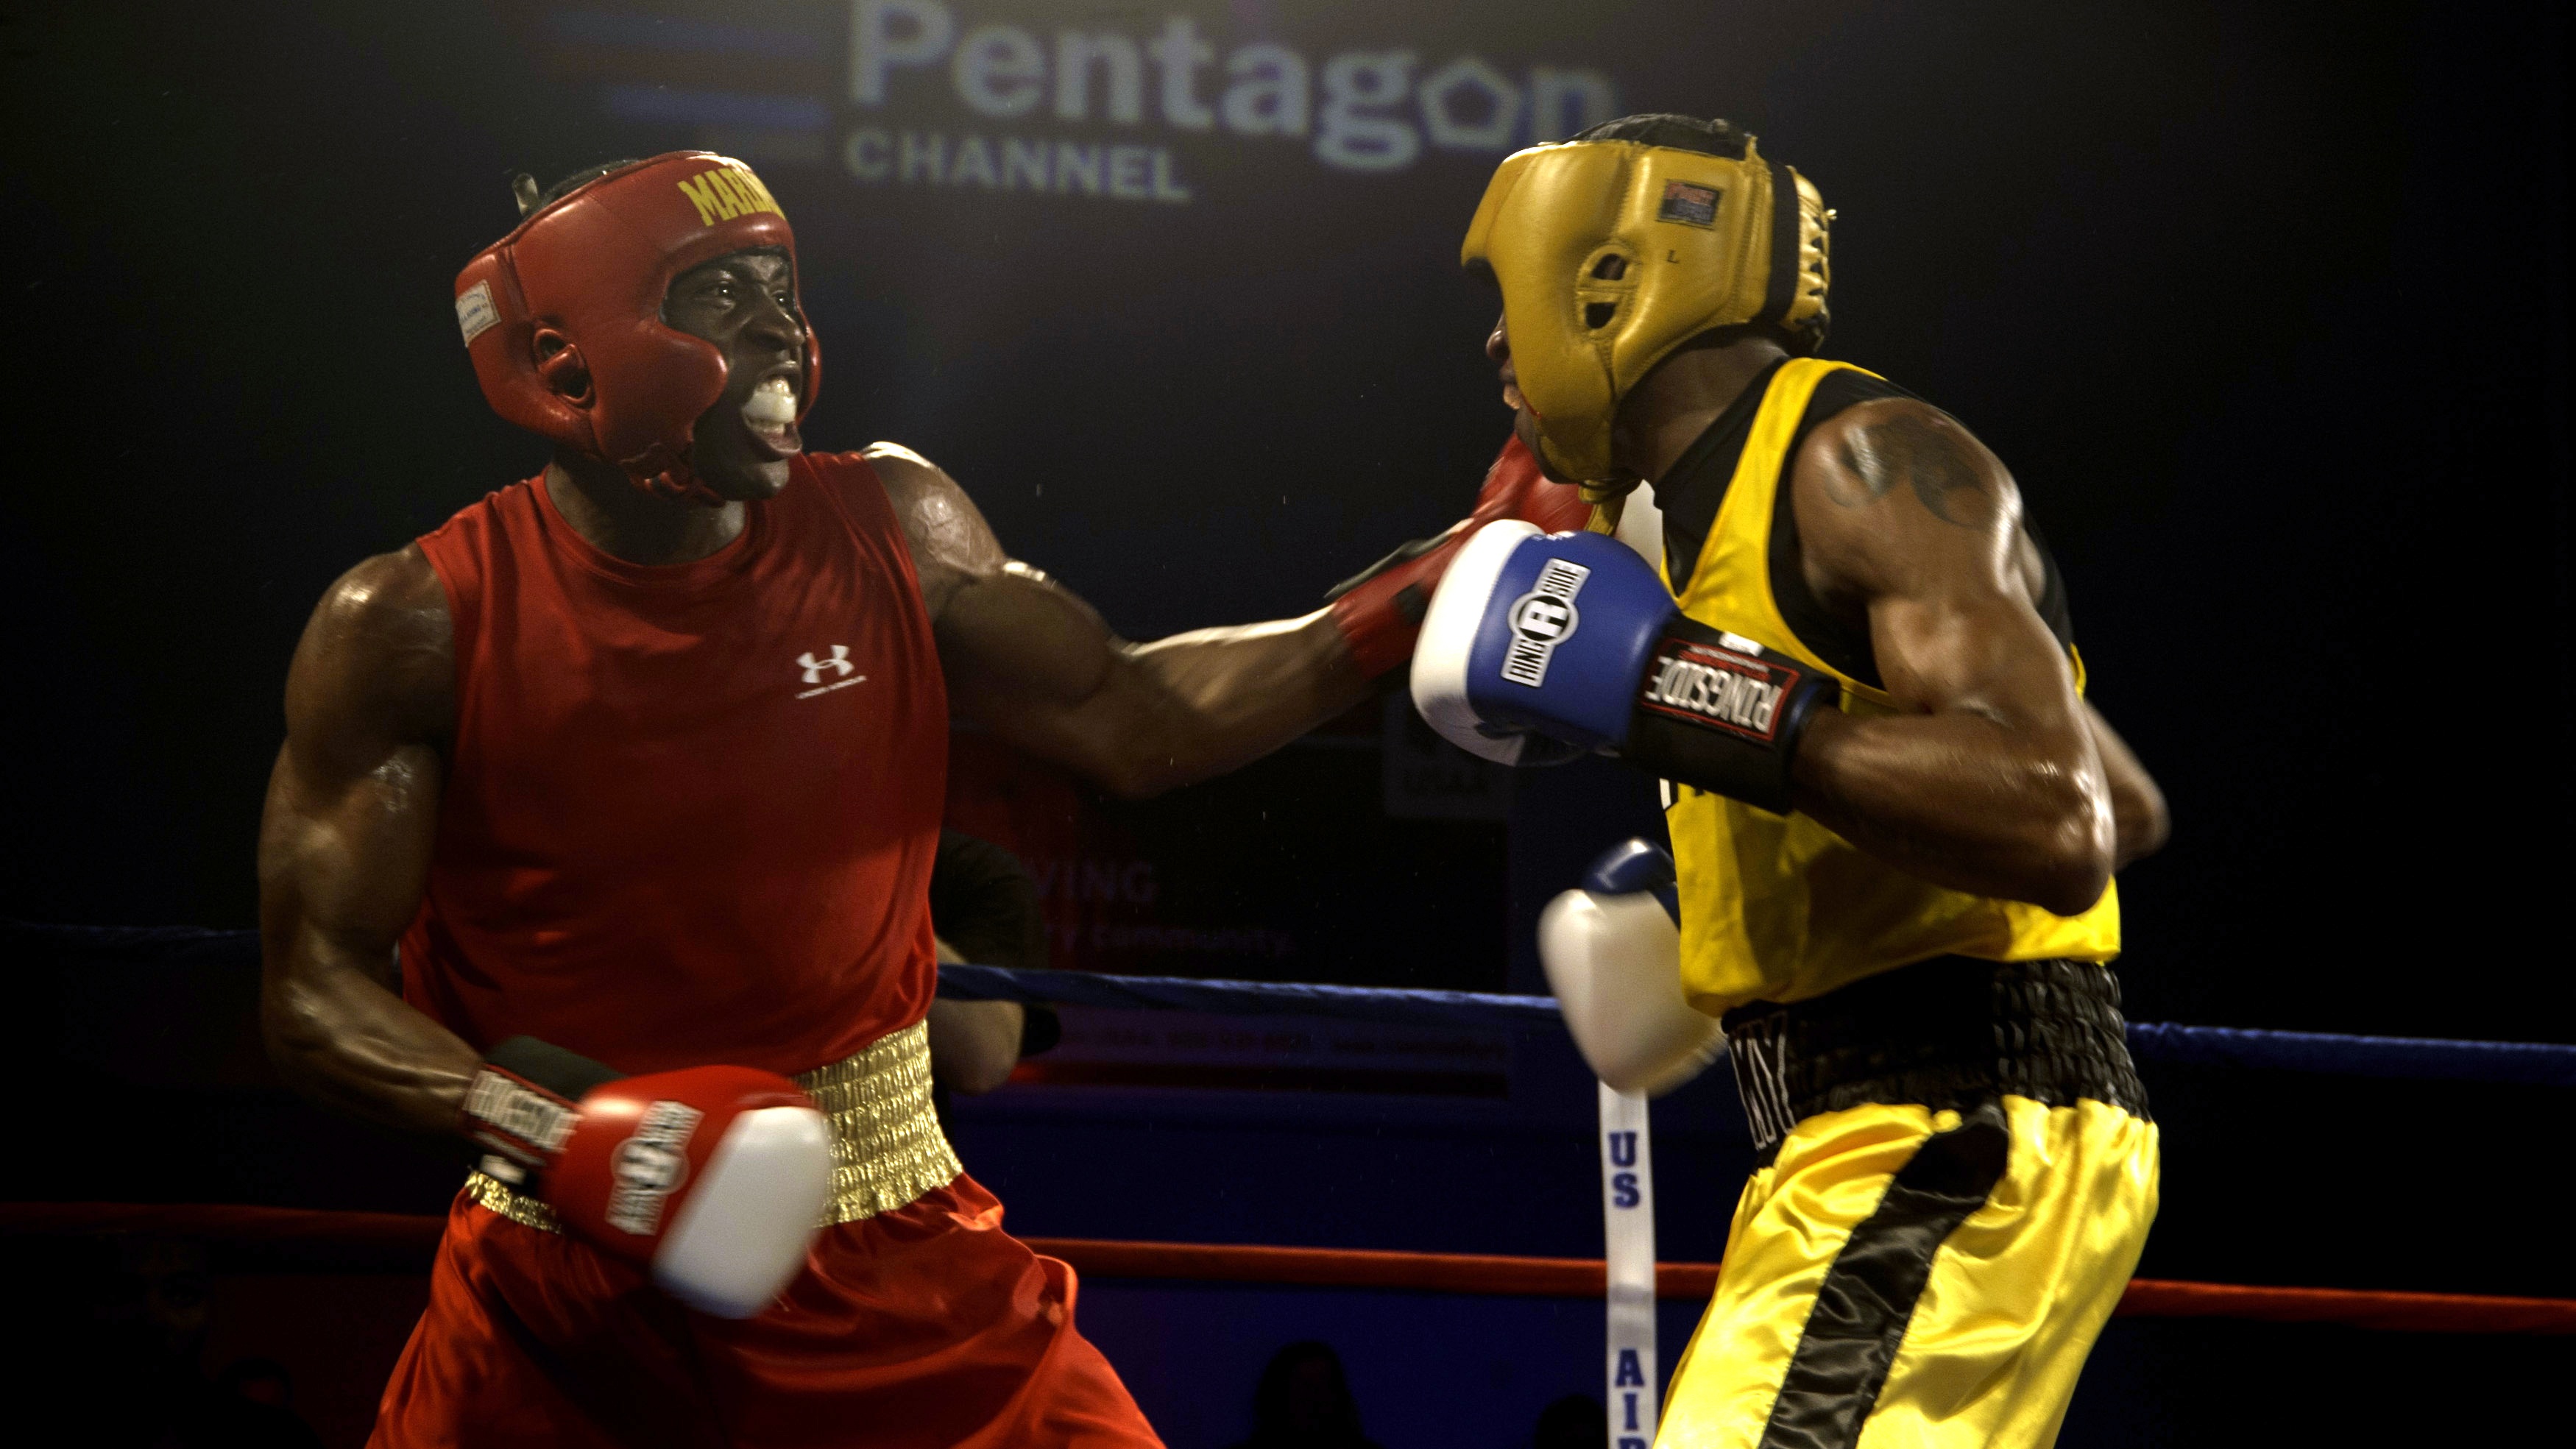 Boxing match photo